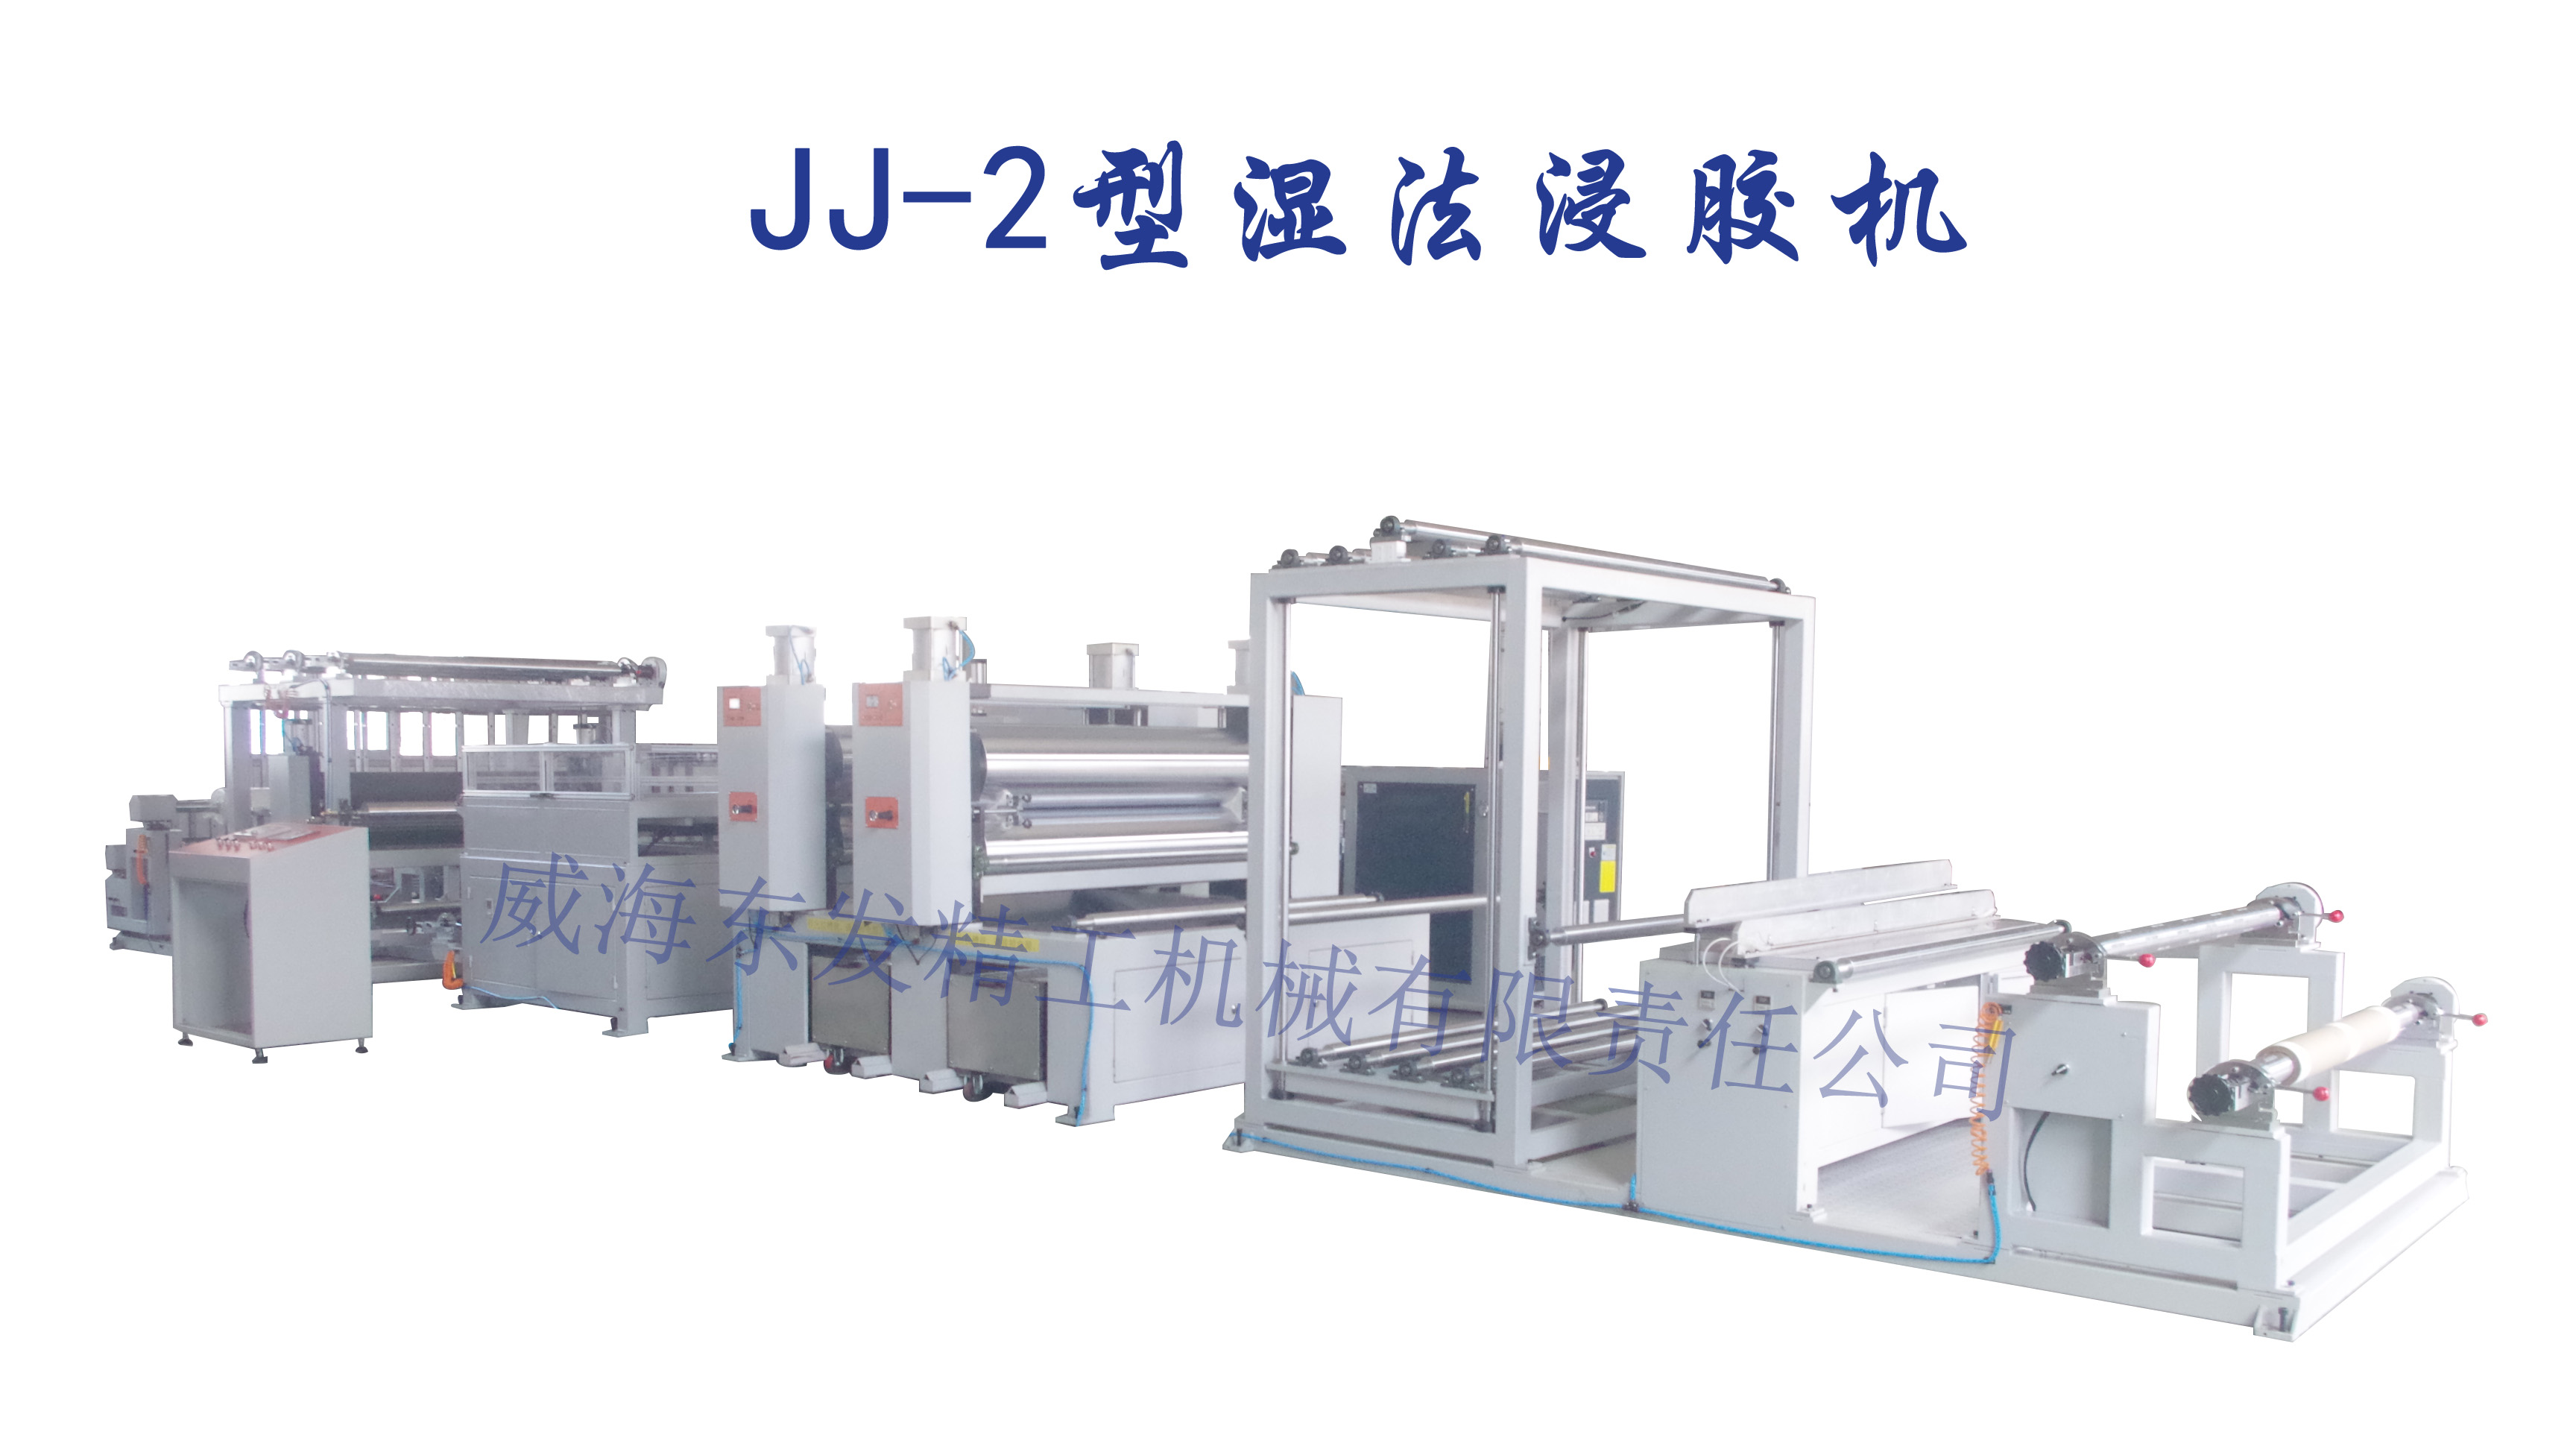 JJ-2型湿法浸胶机